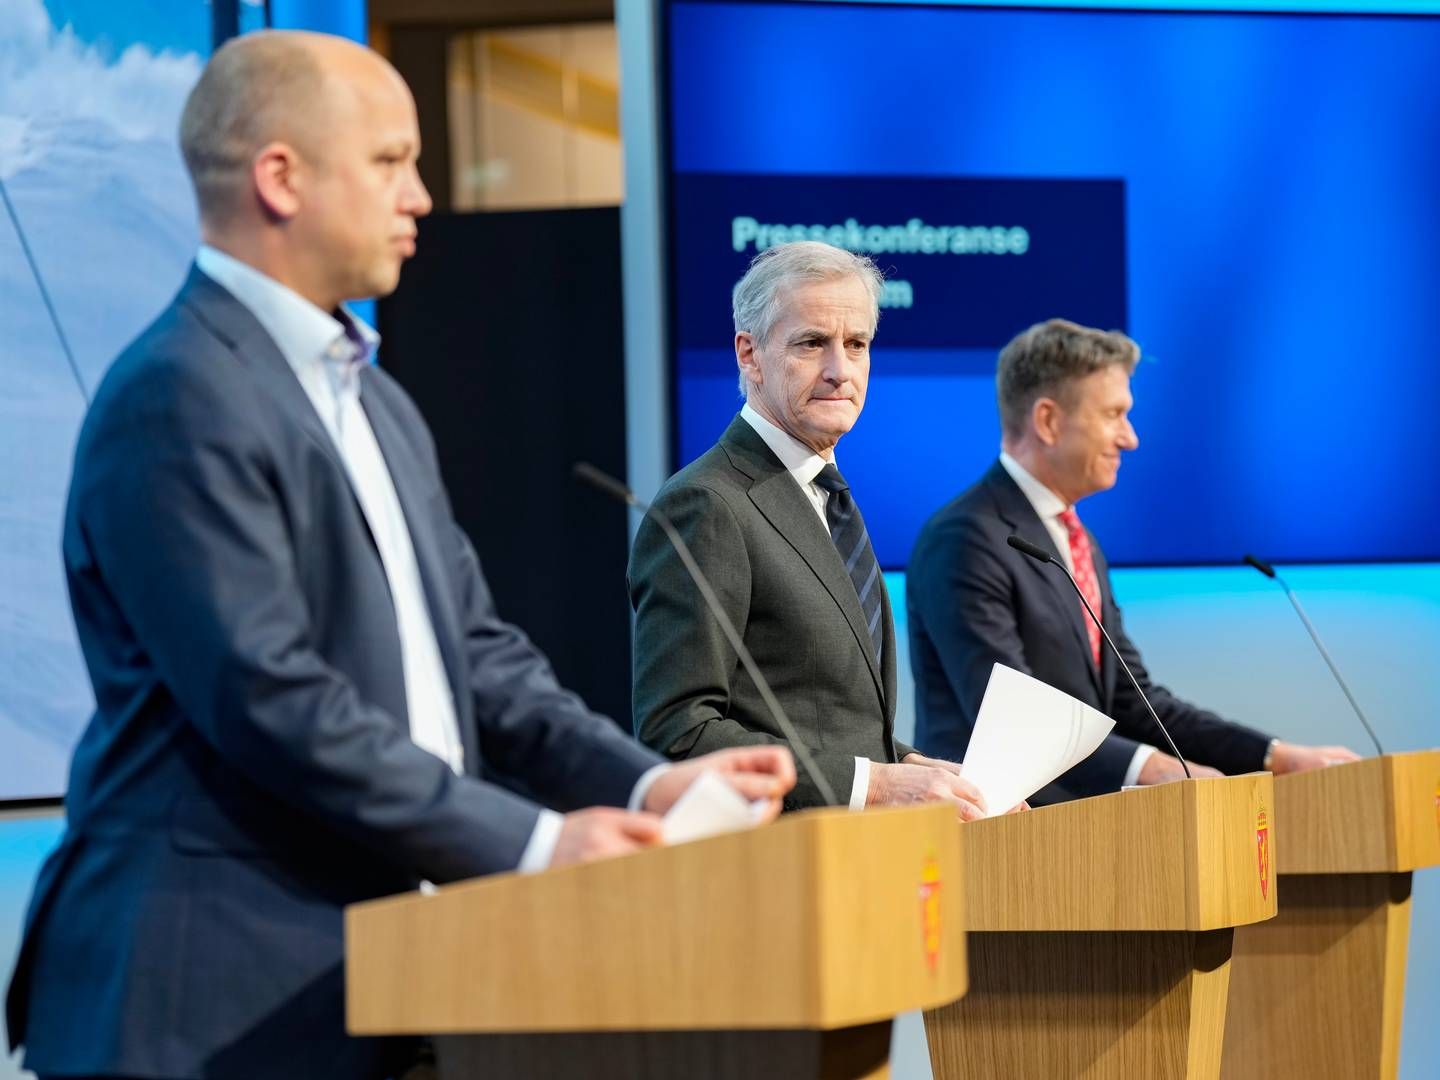 ENDRER STRØMSTØTTEN: Regjeringen la frem nye innretninger på strømstøtten på en pressekonferanse onsdag kveld. | Foto: Fredrik Varfjell / NTB